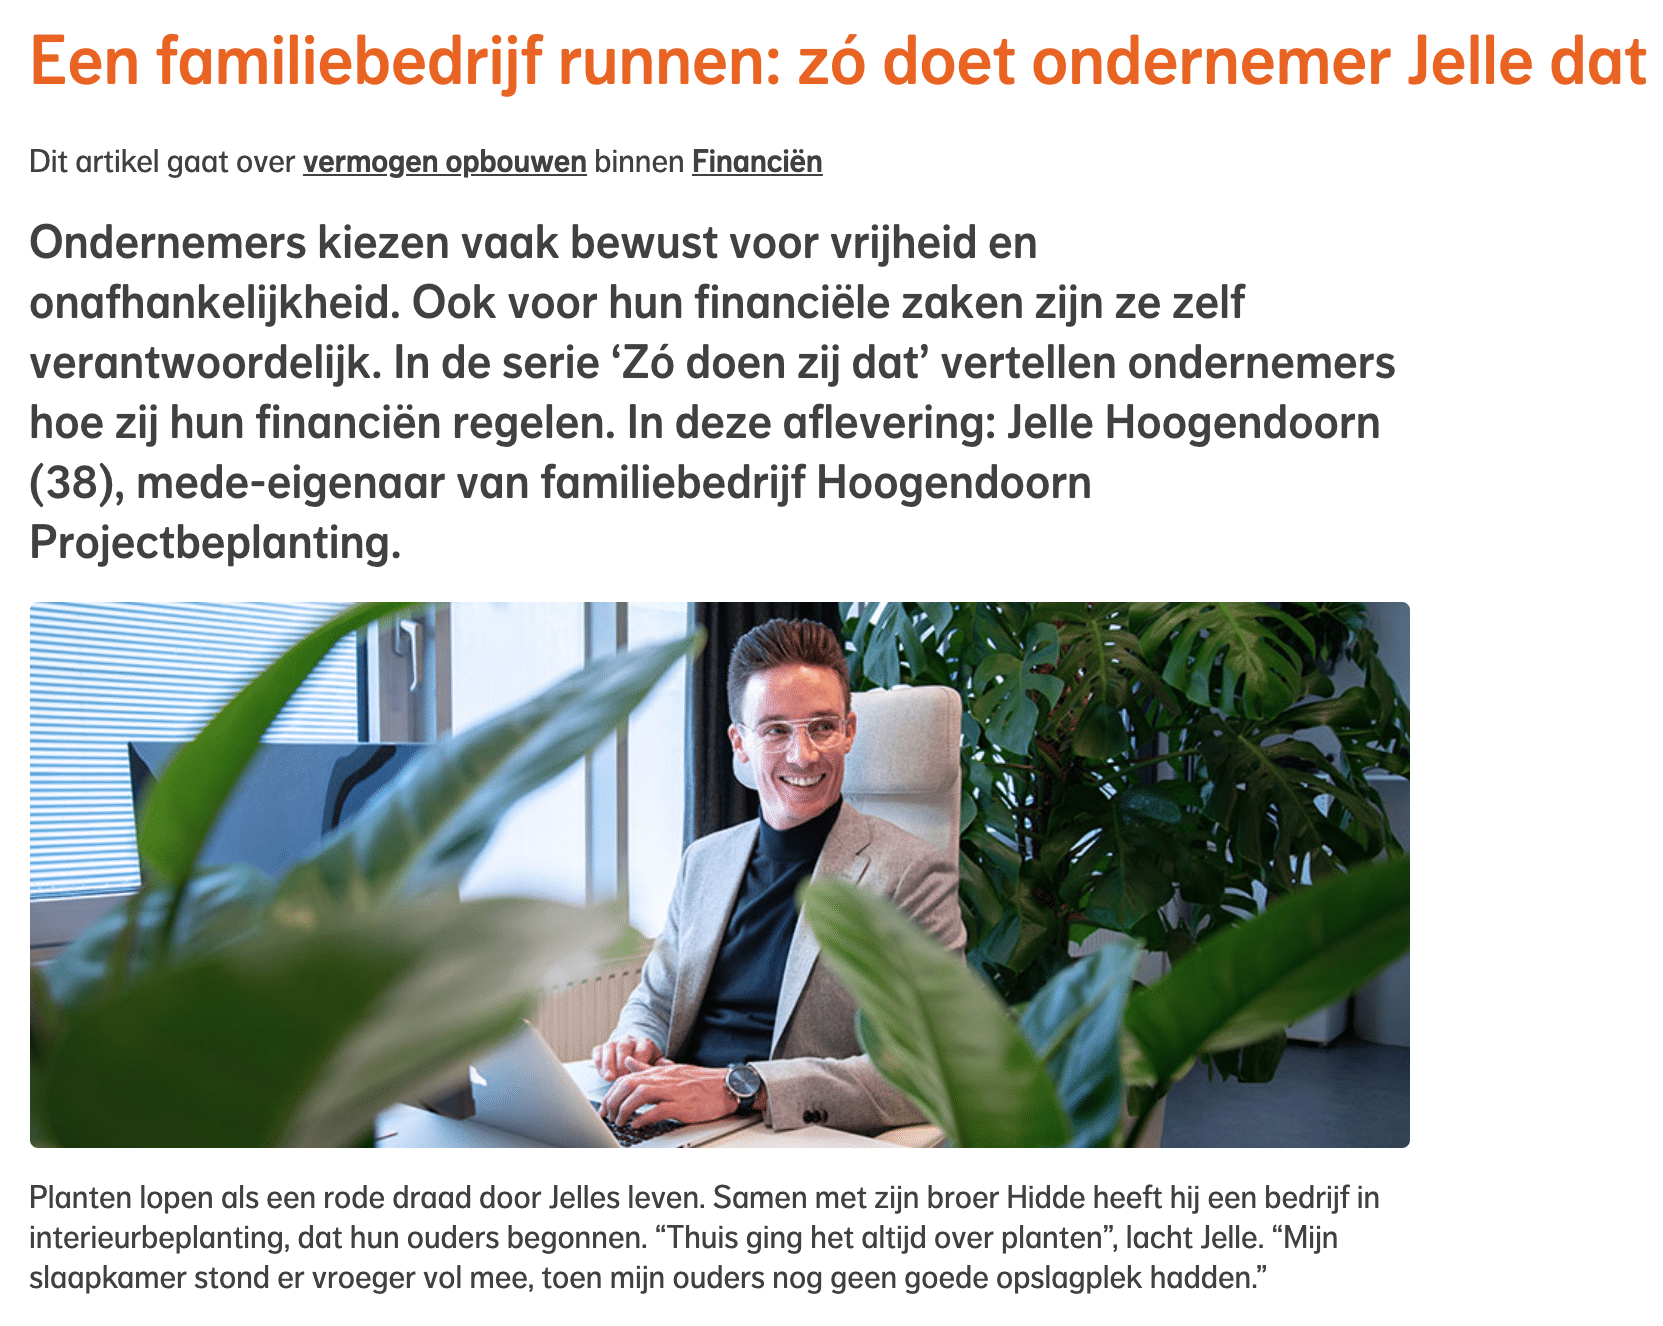 Interview met Jelle Hoogendoorn voor Nationale Nederlanden